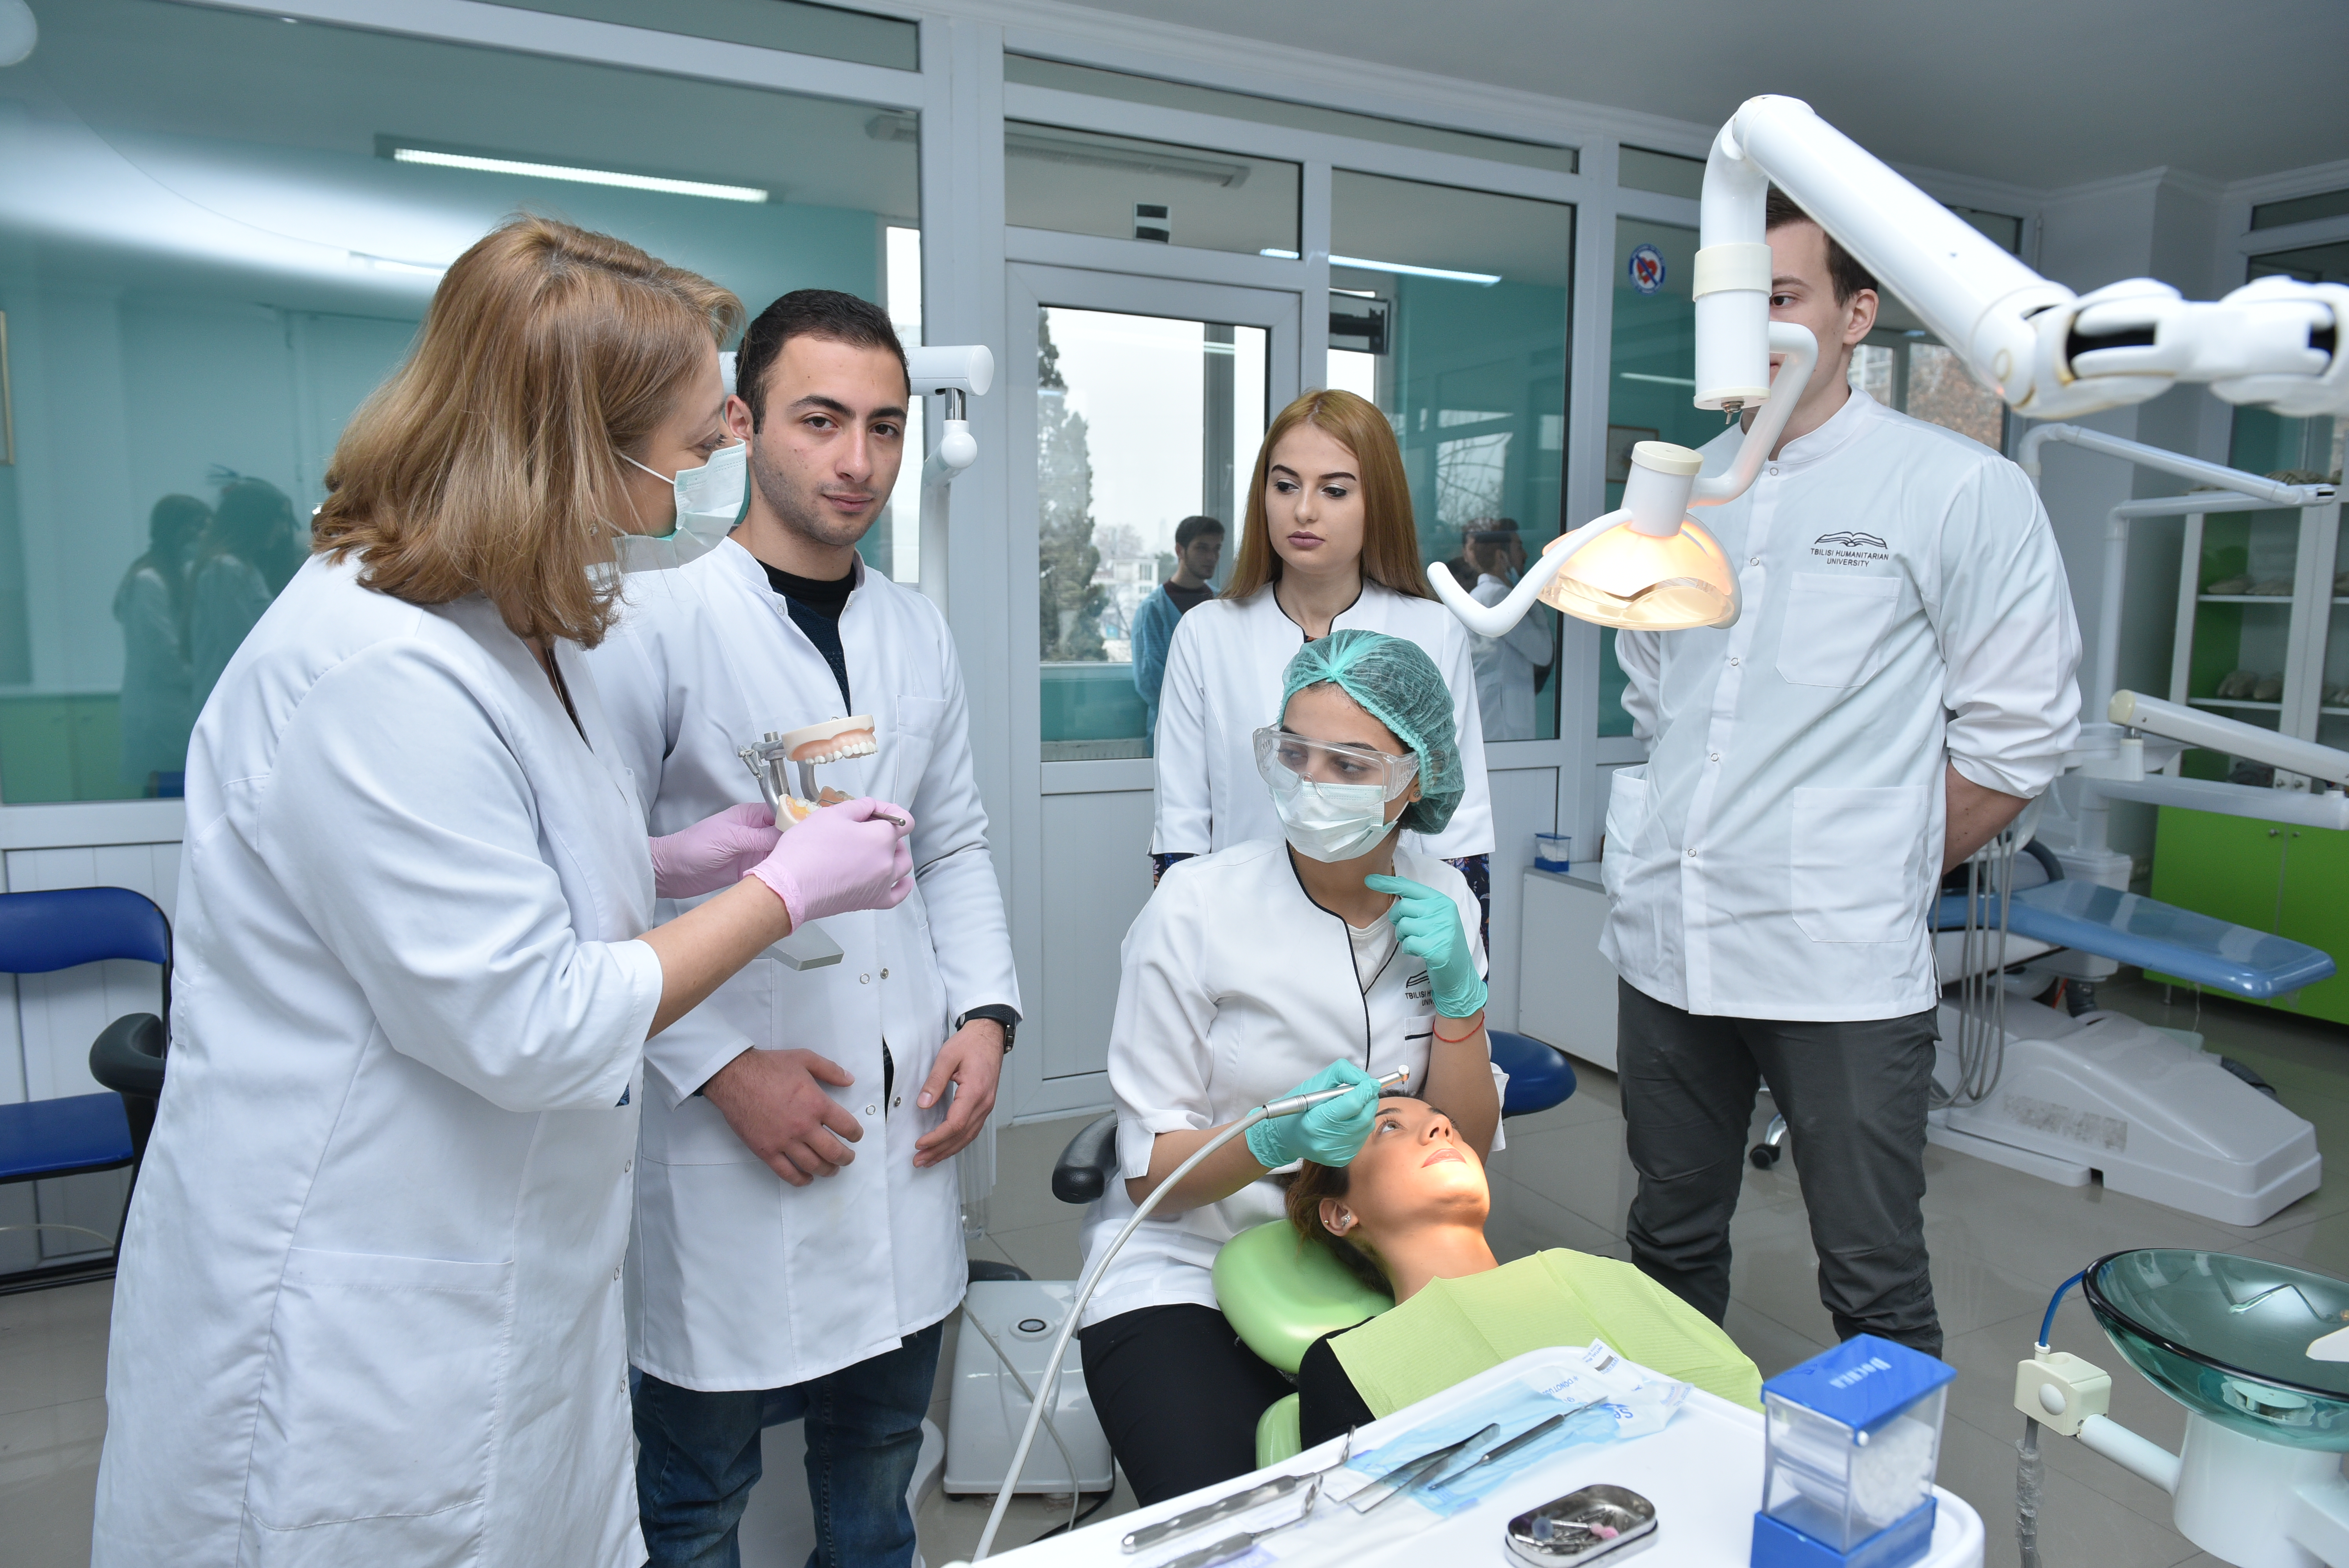 თჰუ-ს საუნივერსიტეტო კლინიკაში სტუდენტების მუშაობა პაციენტებთან